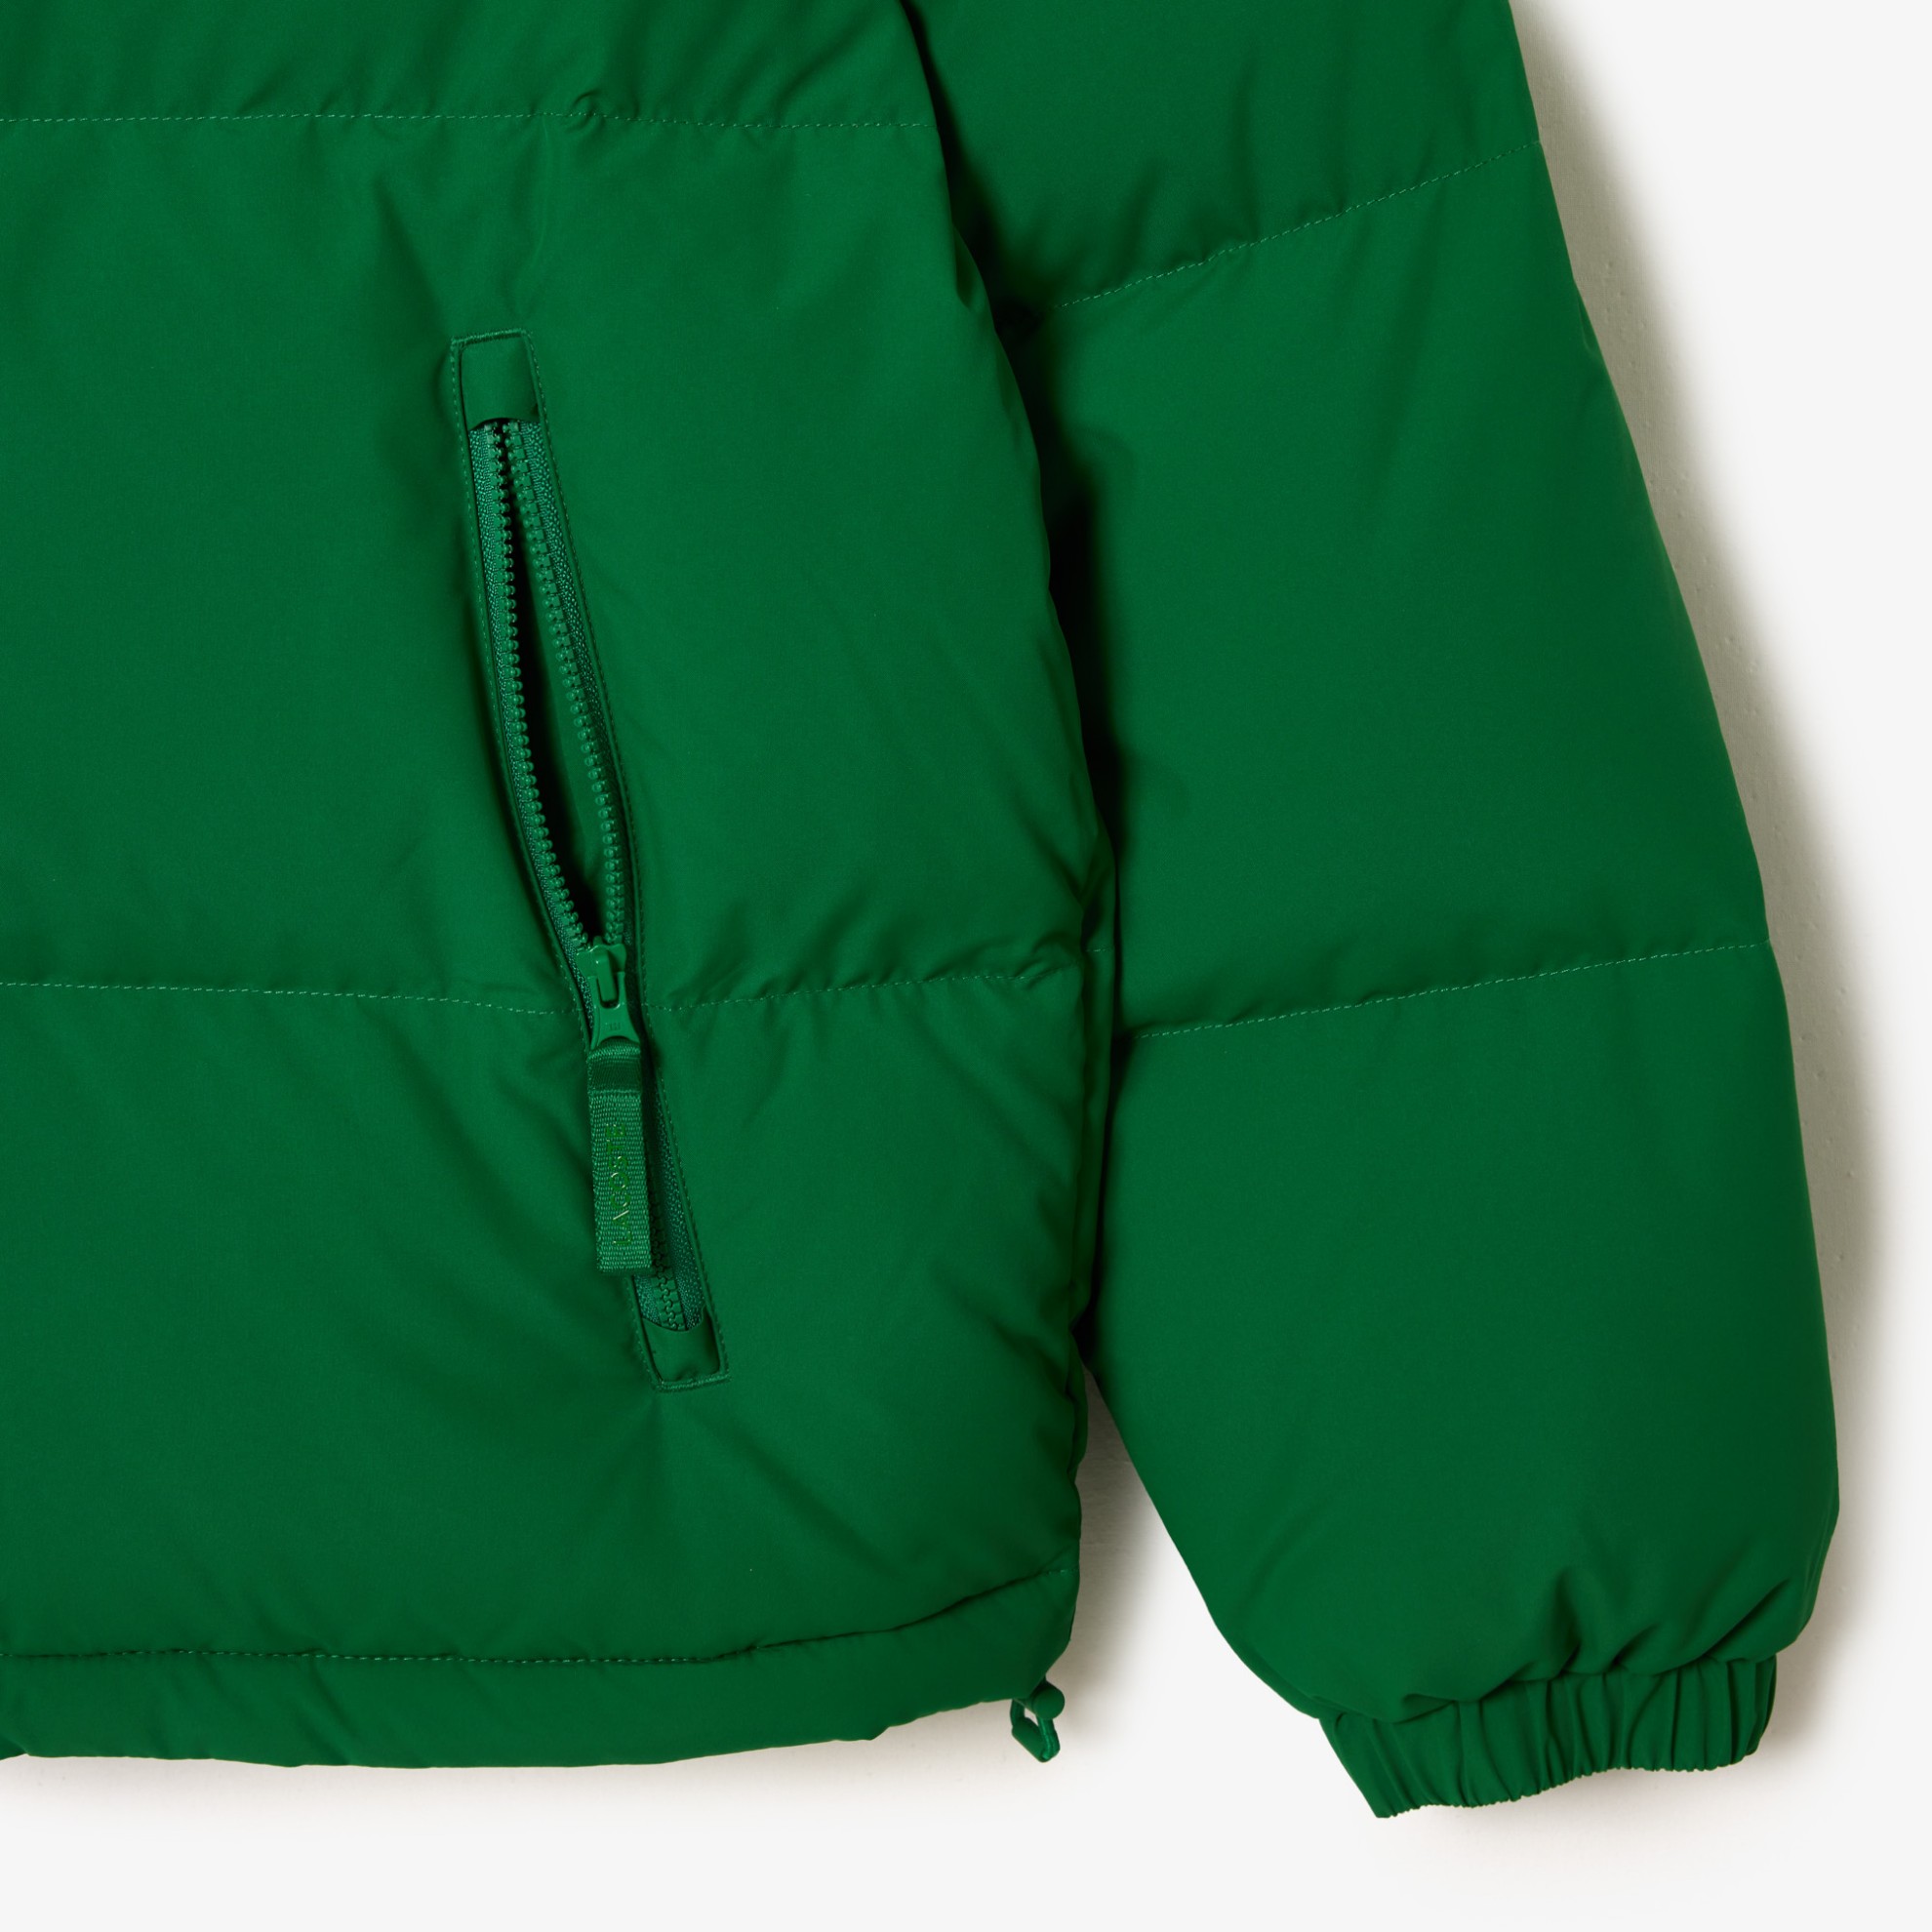 Εικόνα της Ανδρικό Lacoste Quilted Αδιάβροχο Κοντό Puffer Jacket